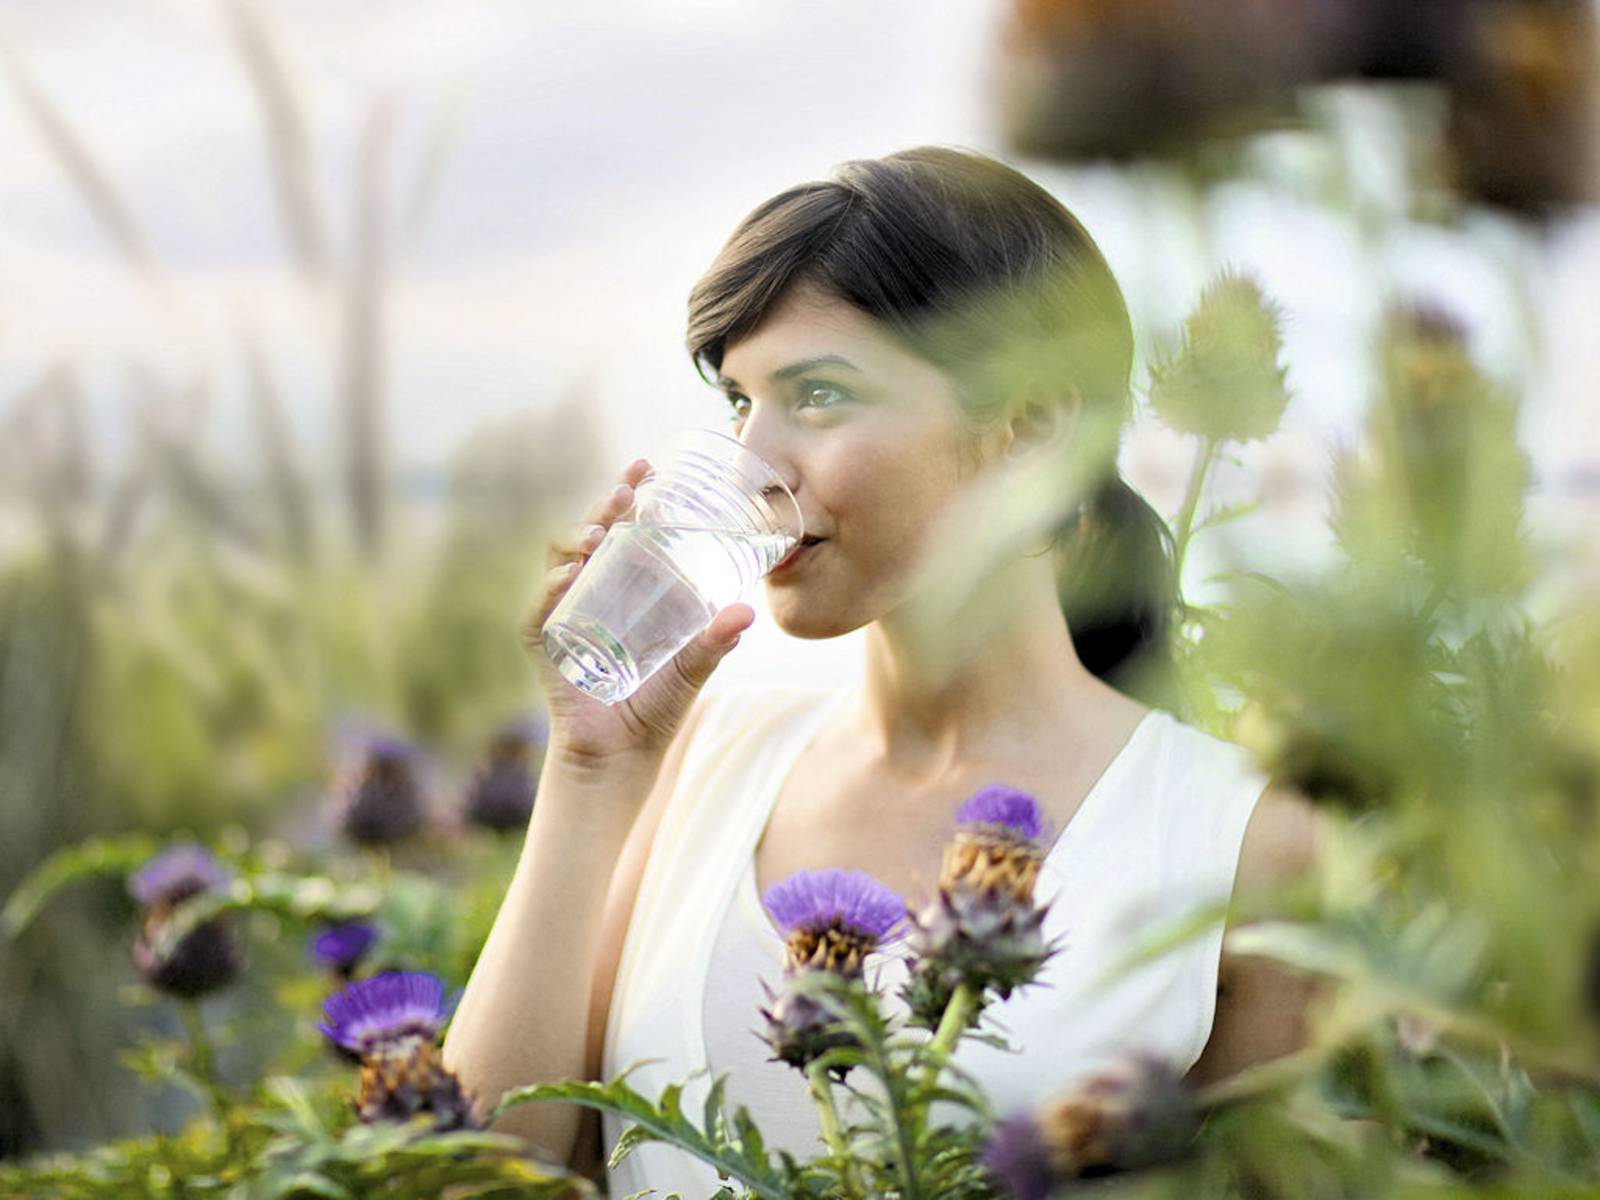 Frau trinkt aus Wasserglas